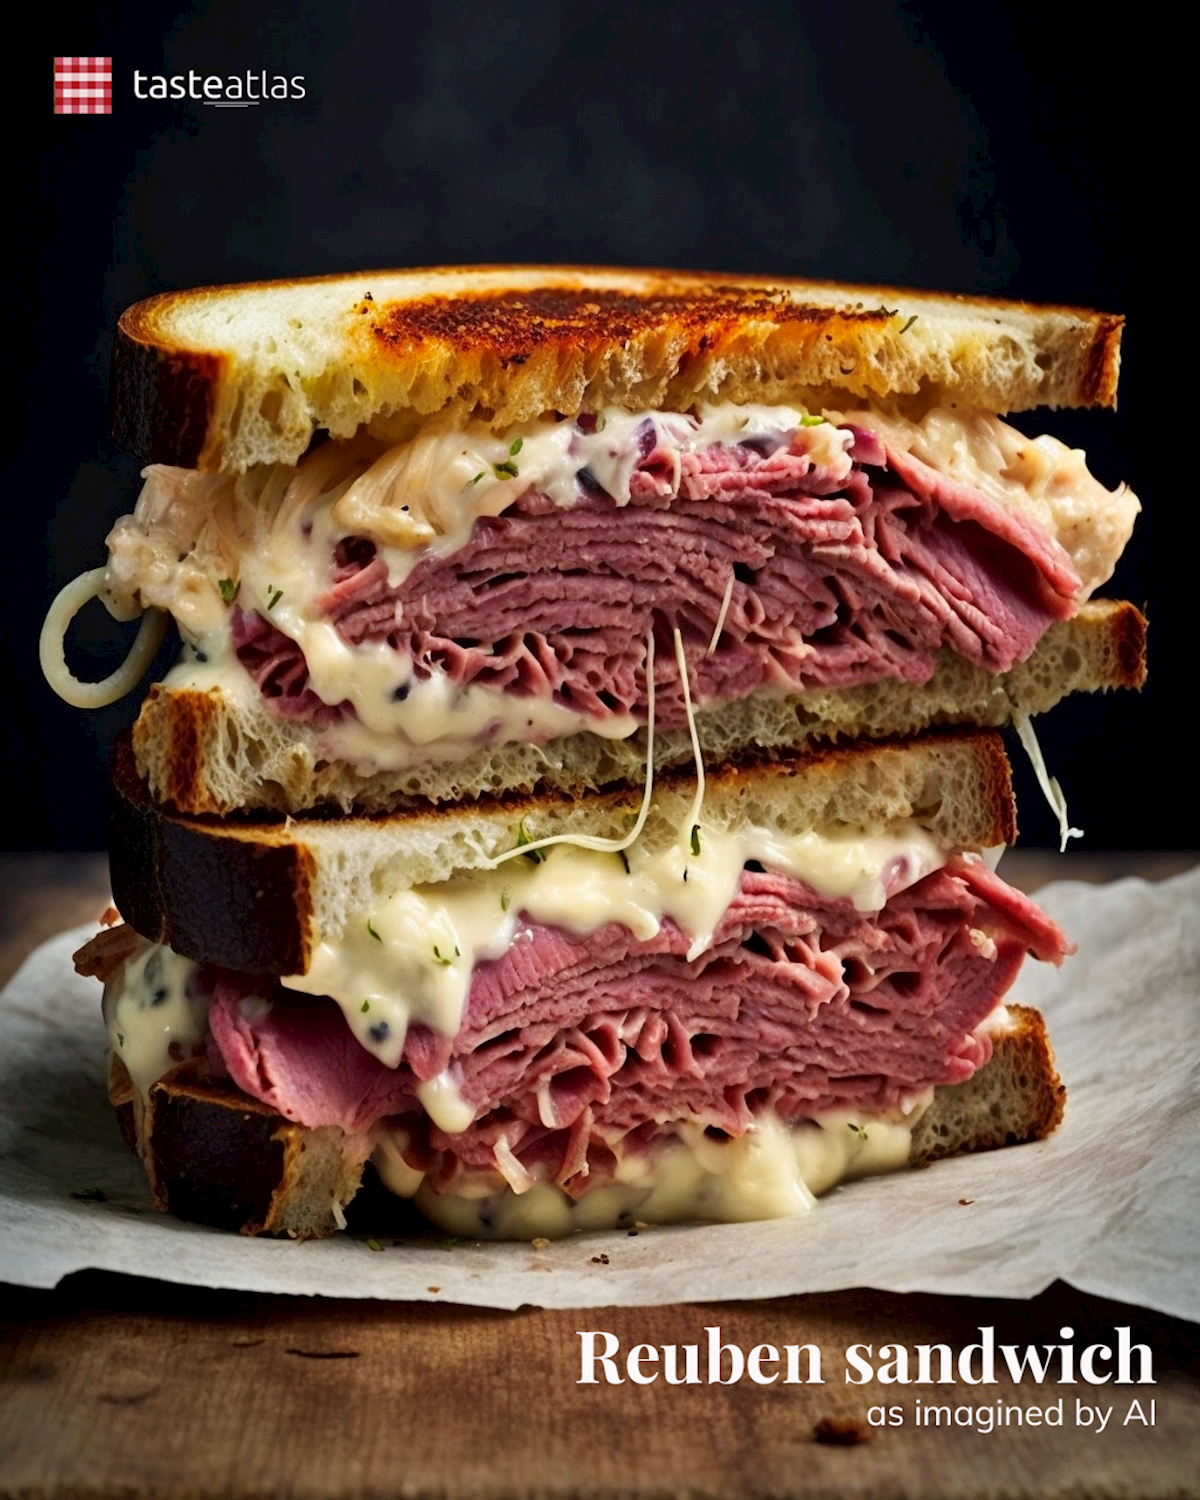 Prompt: Imagine authentic Reuben sandwich